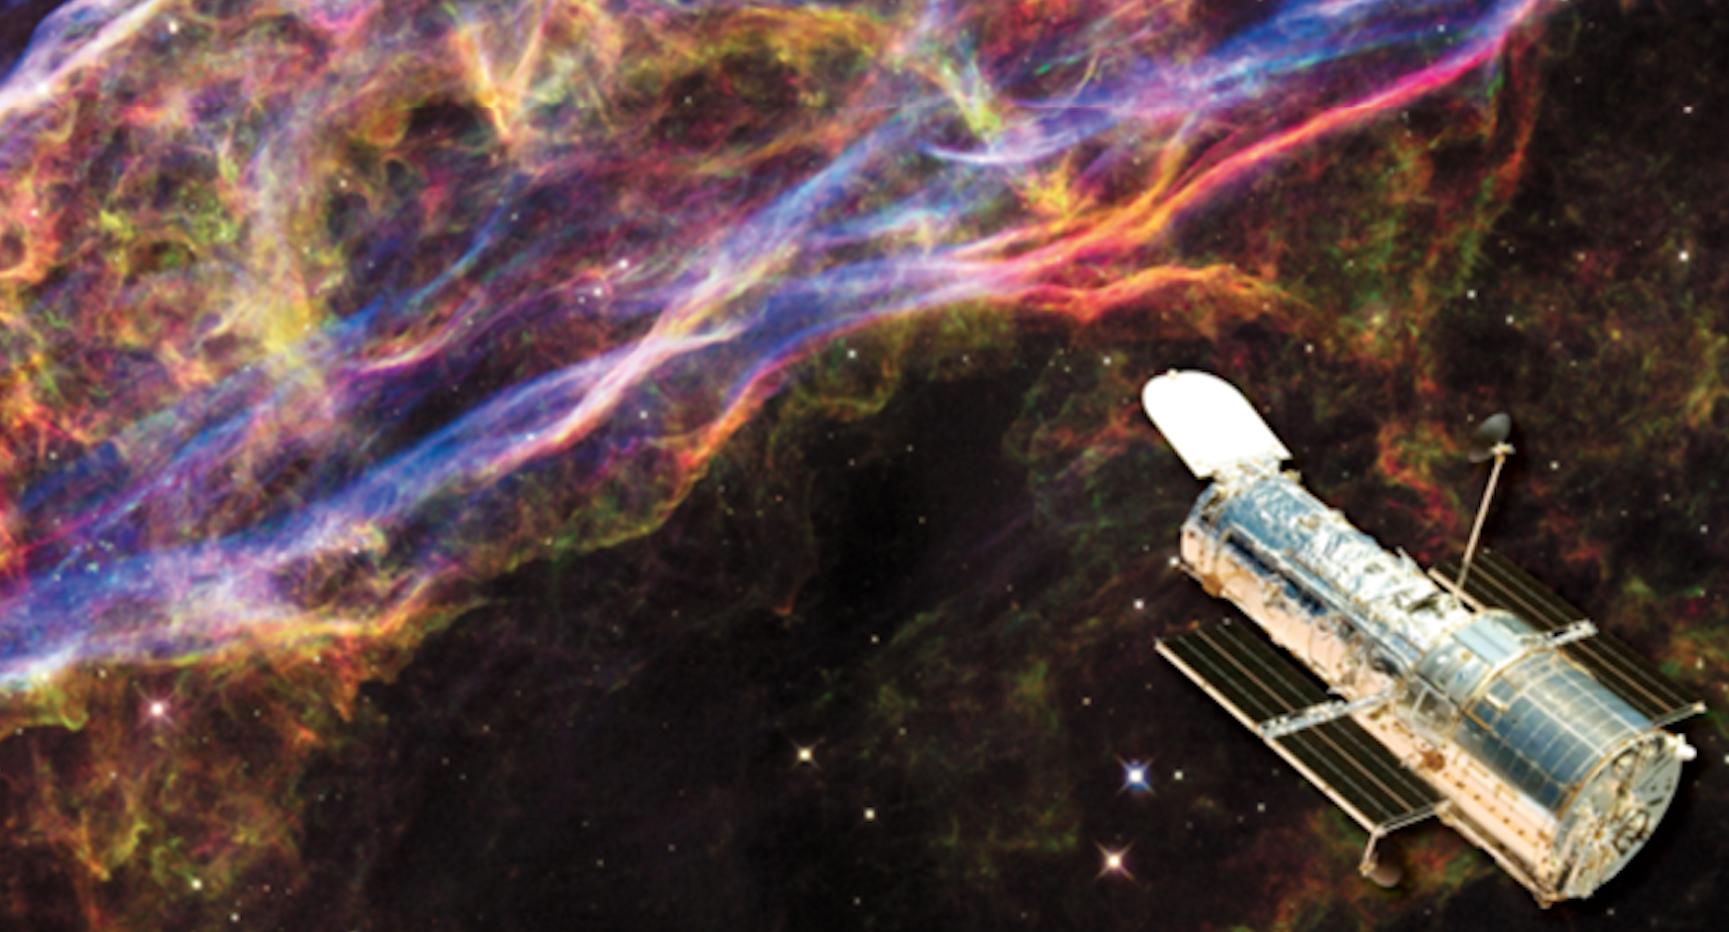 NASA revive al Hubble y nos regala impresionantes fotos de galaxias lejanas